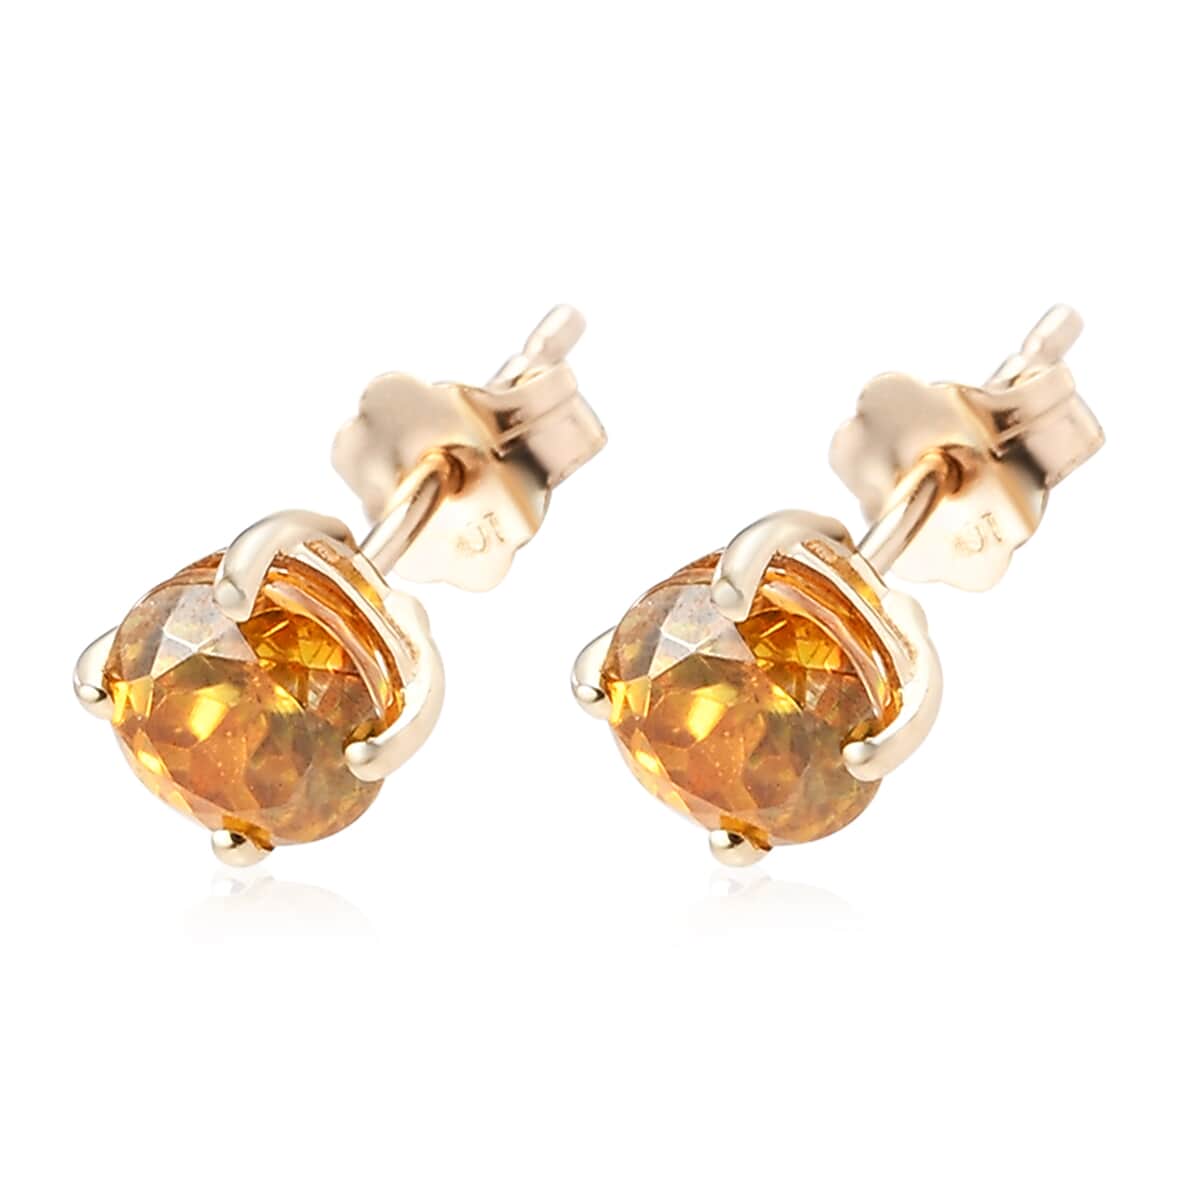 Luxoro 10K Yellow Gold Premium Picos Altos Orange Sphalerite Solitaire Stud Earrings 1.35 ctw image number 3